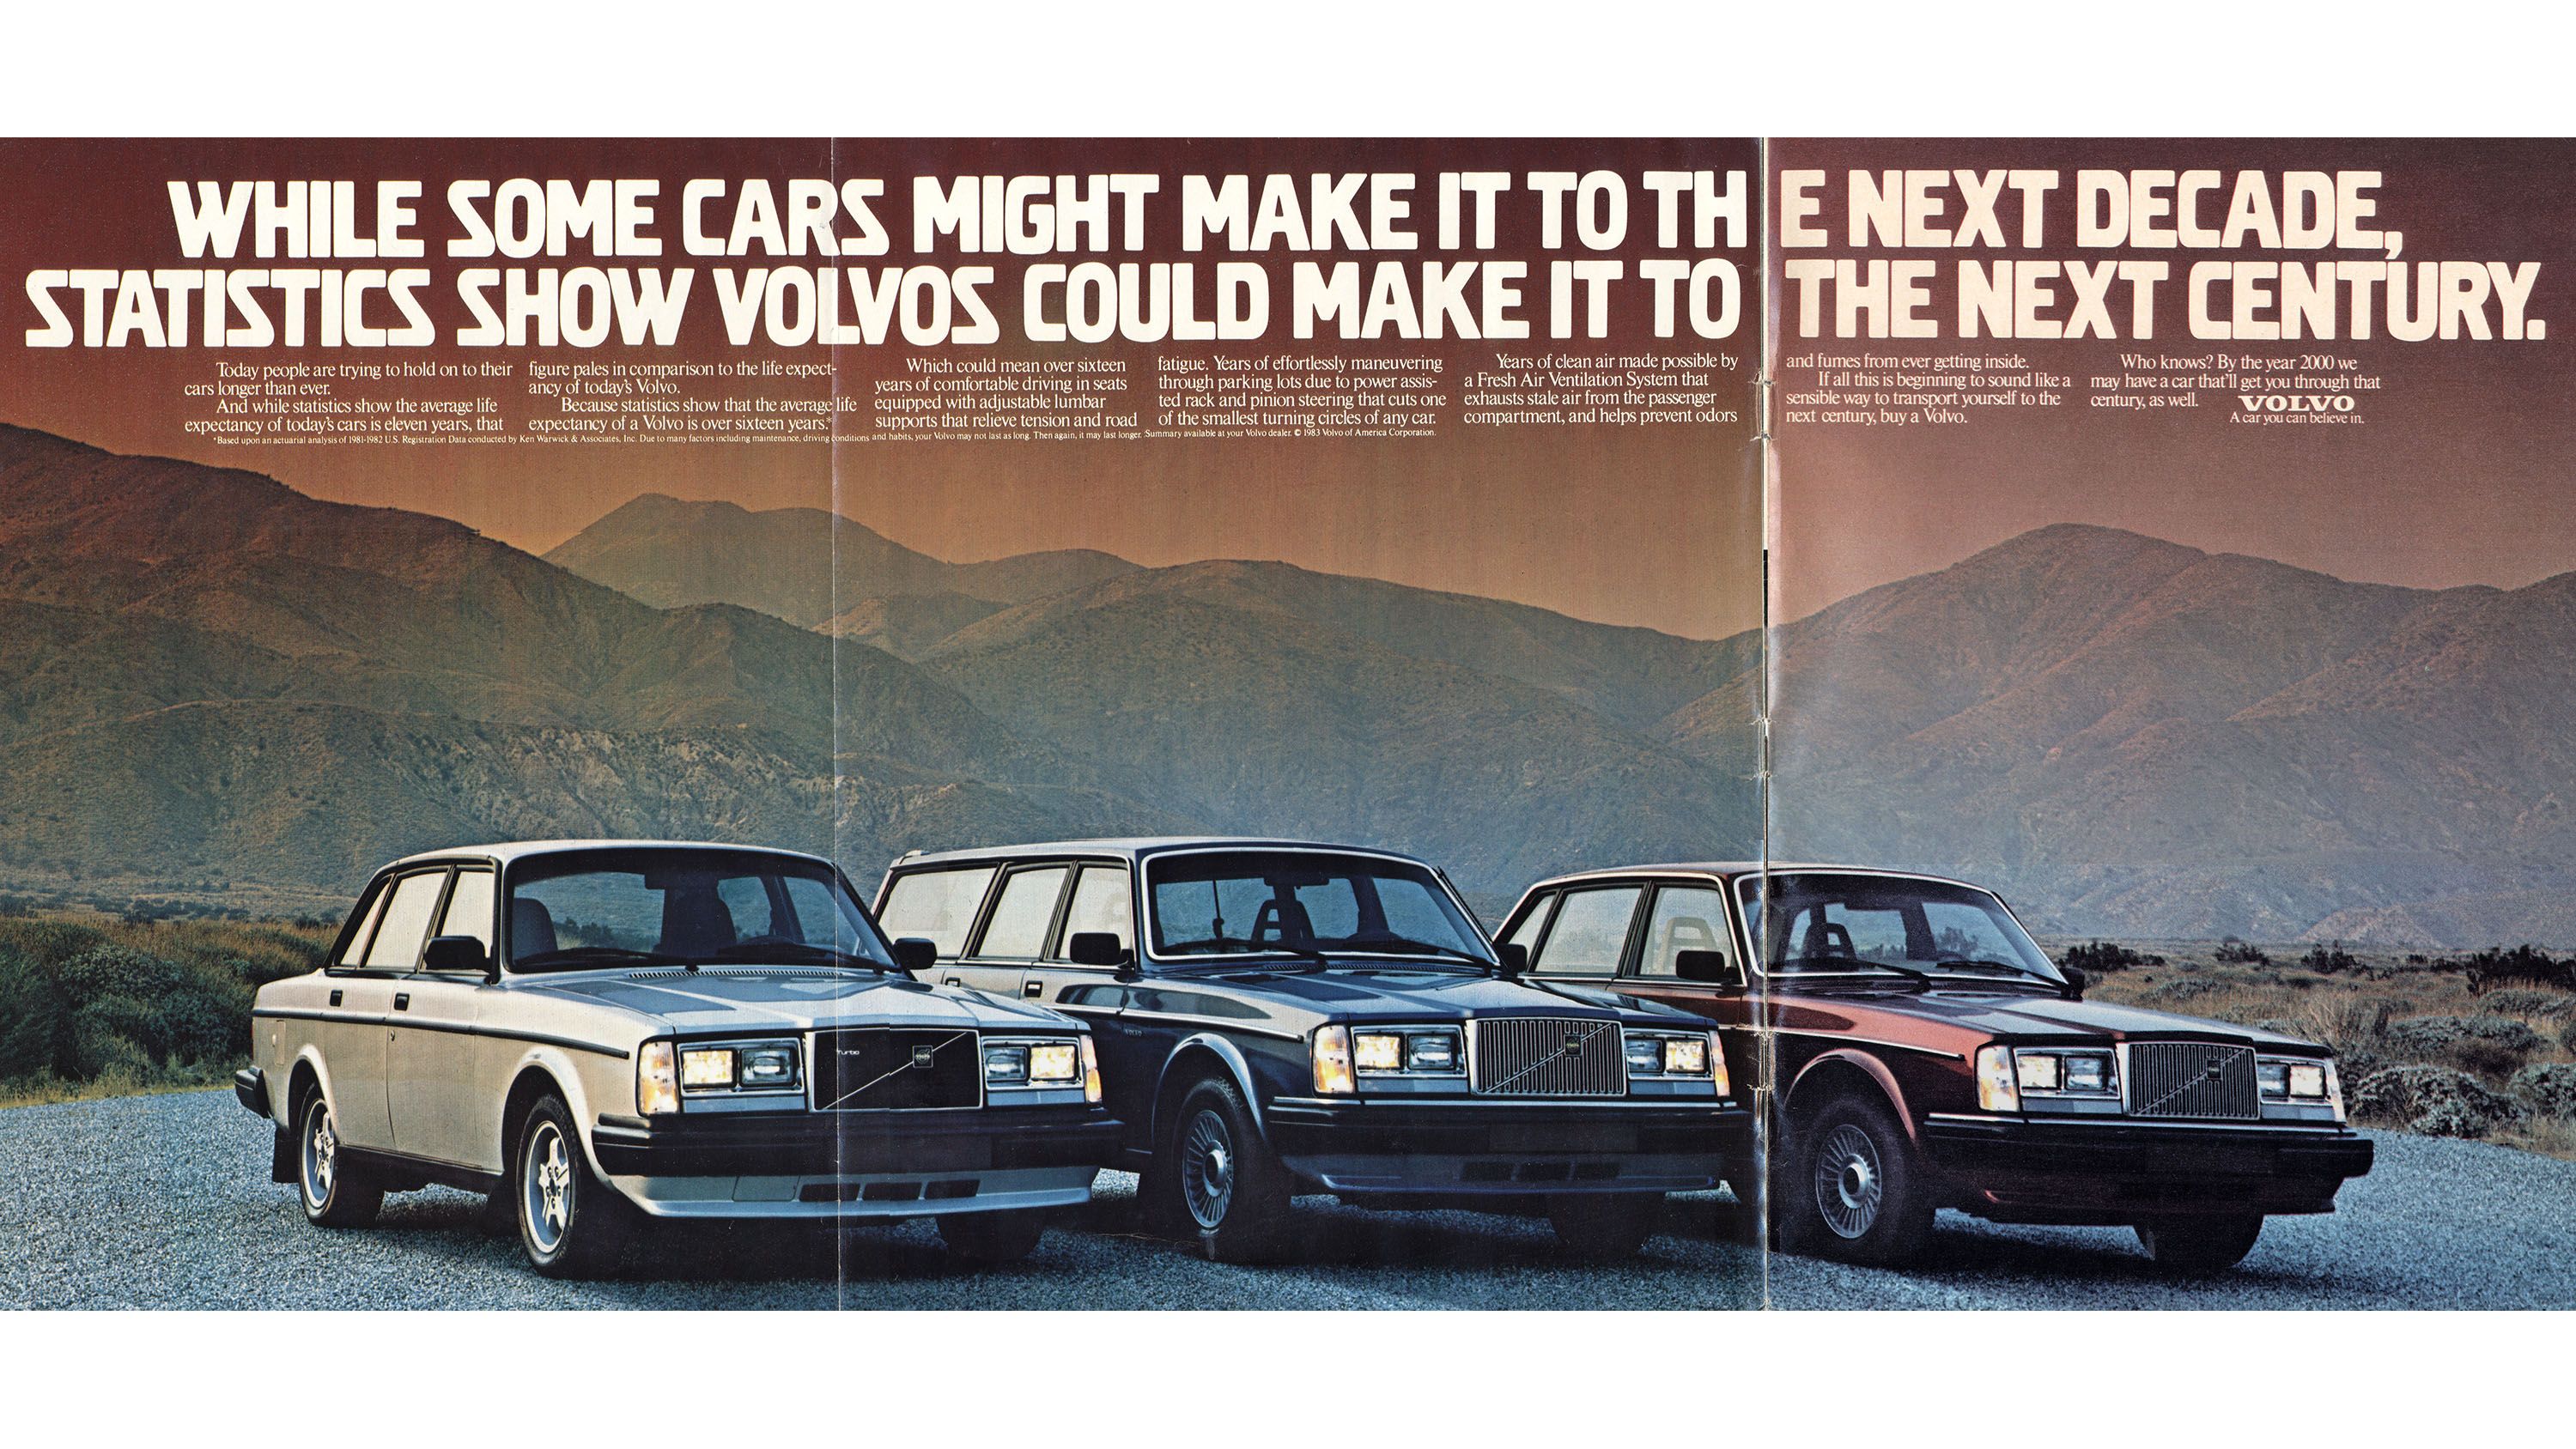 1984 Intercooled Turbo Volvo Fall In Love 6.8 Flat Original Print Ad-8.5 x 11" 